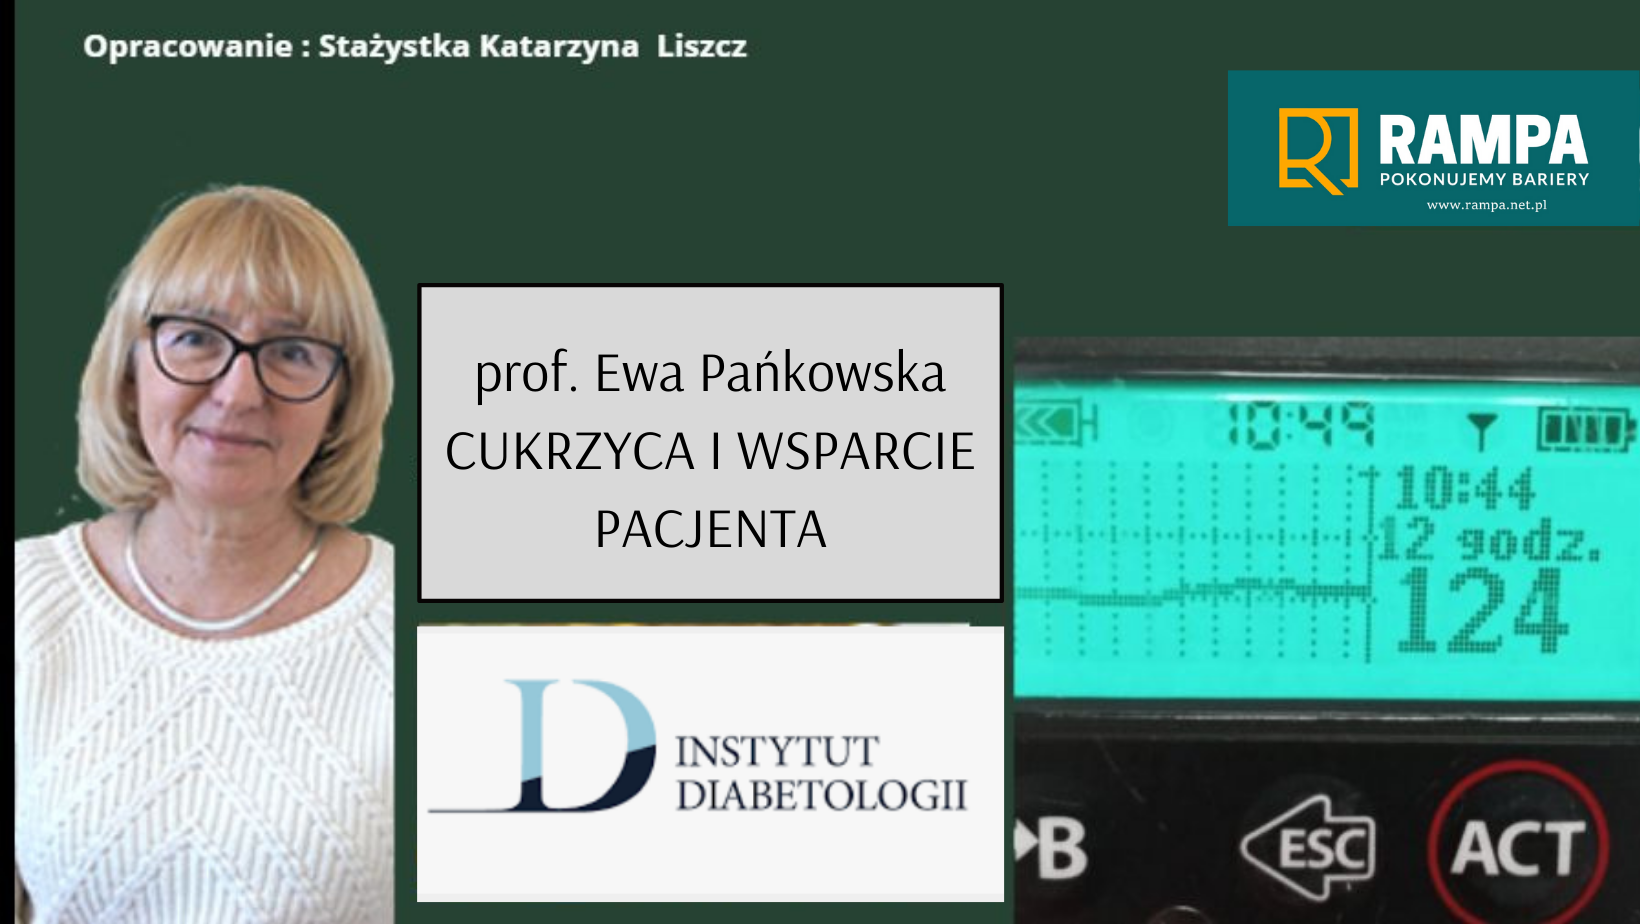 prof. Ewa Pańkowska w wywiadzie o cukrzycy i wsparciu pacjenta